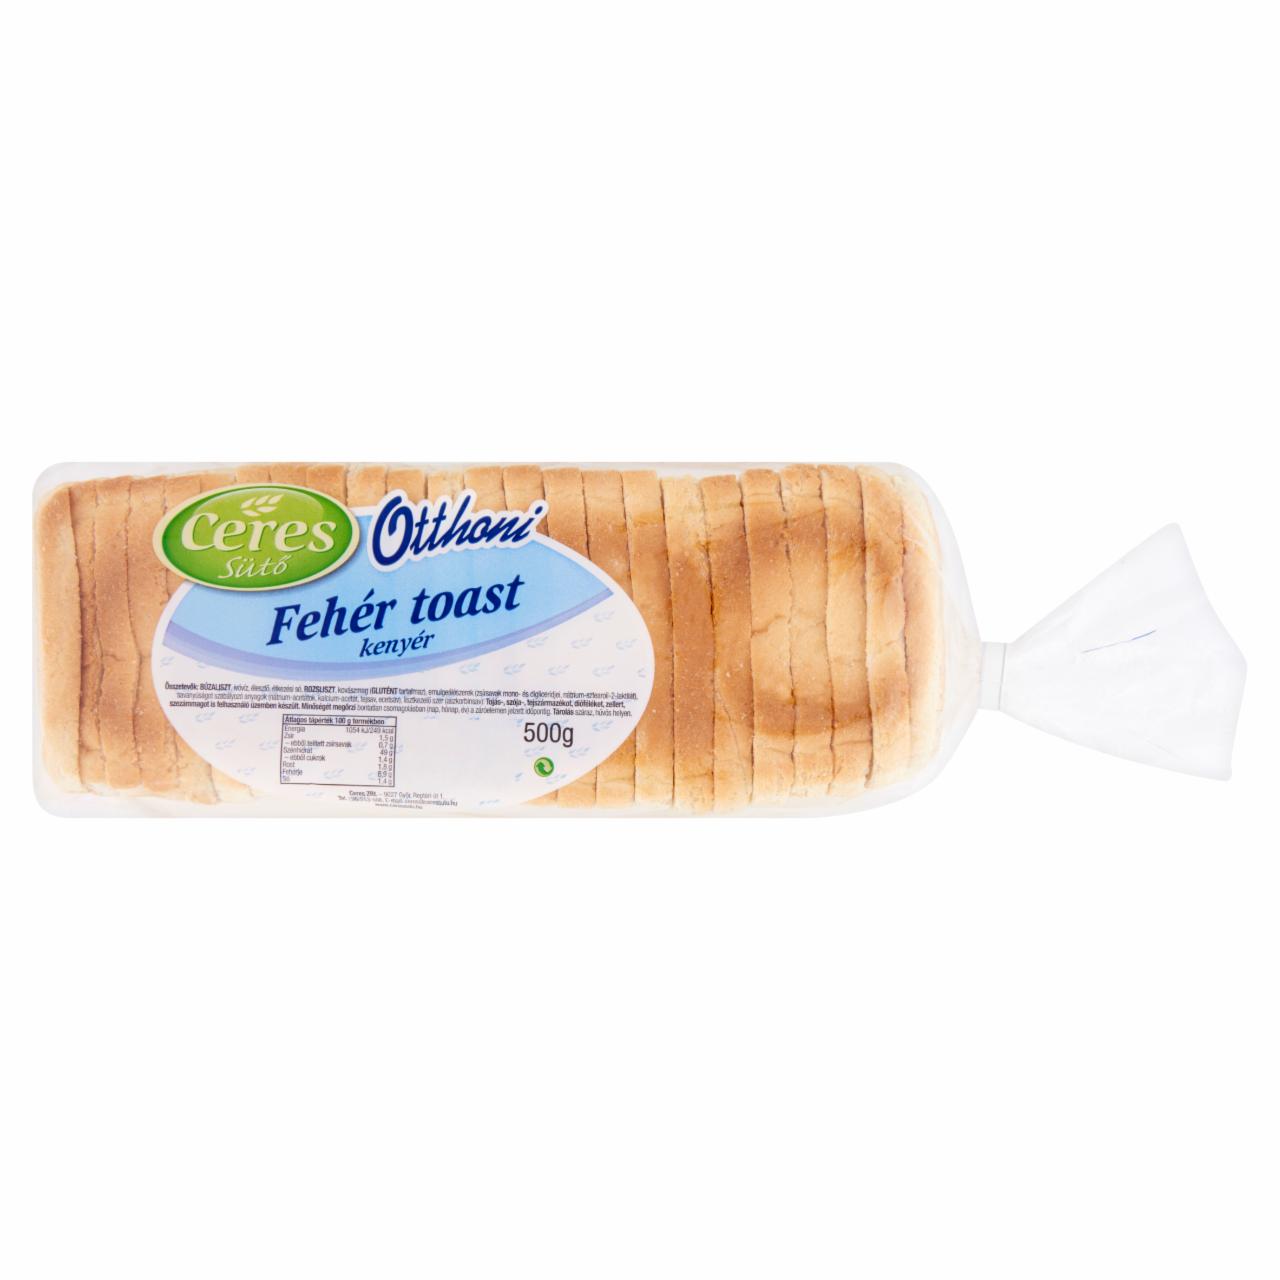 Képek - Ceres Sütő Otthoni fehér toast kenyér 500 g